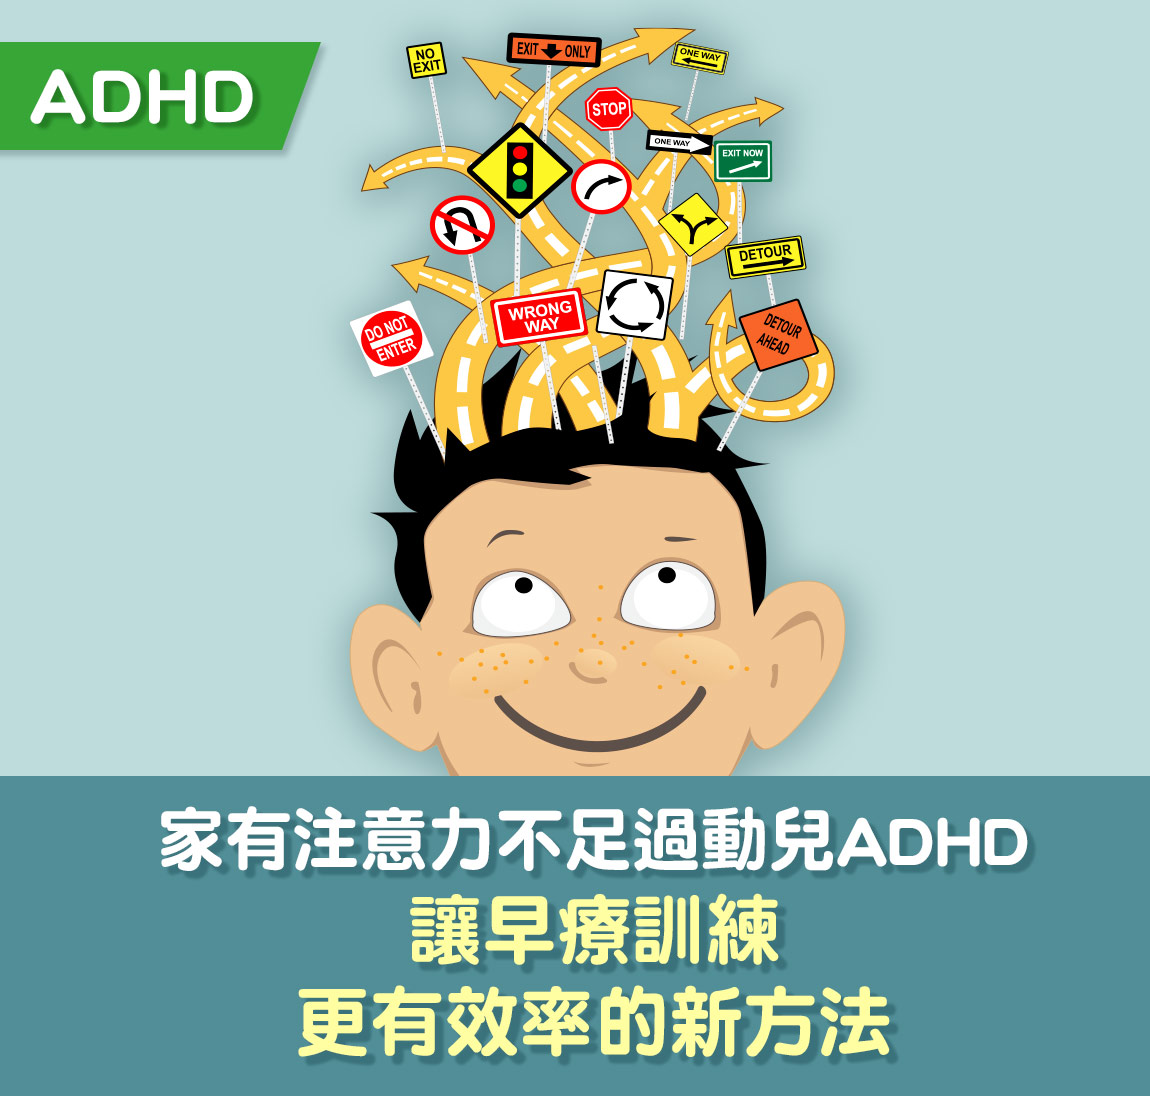 家有注意力不足過動兒ADHD ,讓早療專注力訓練更有效率的新方法